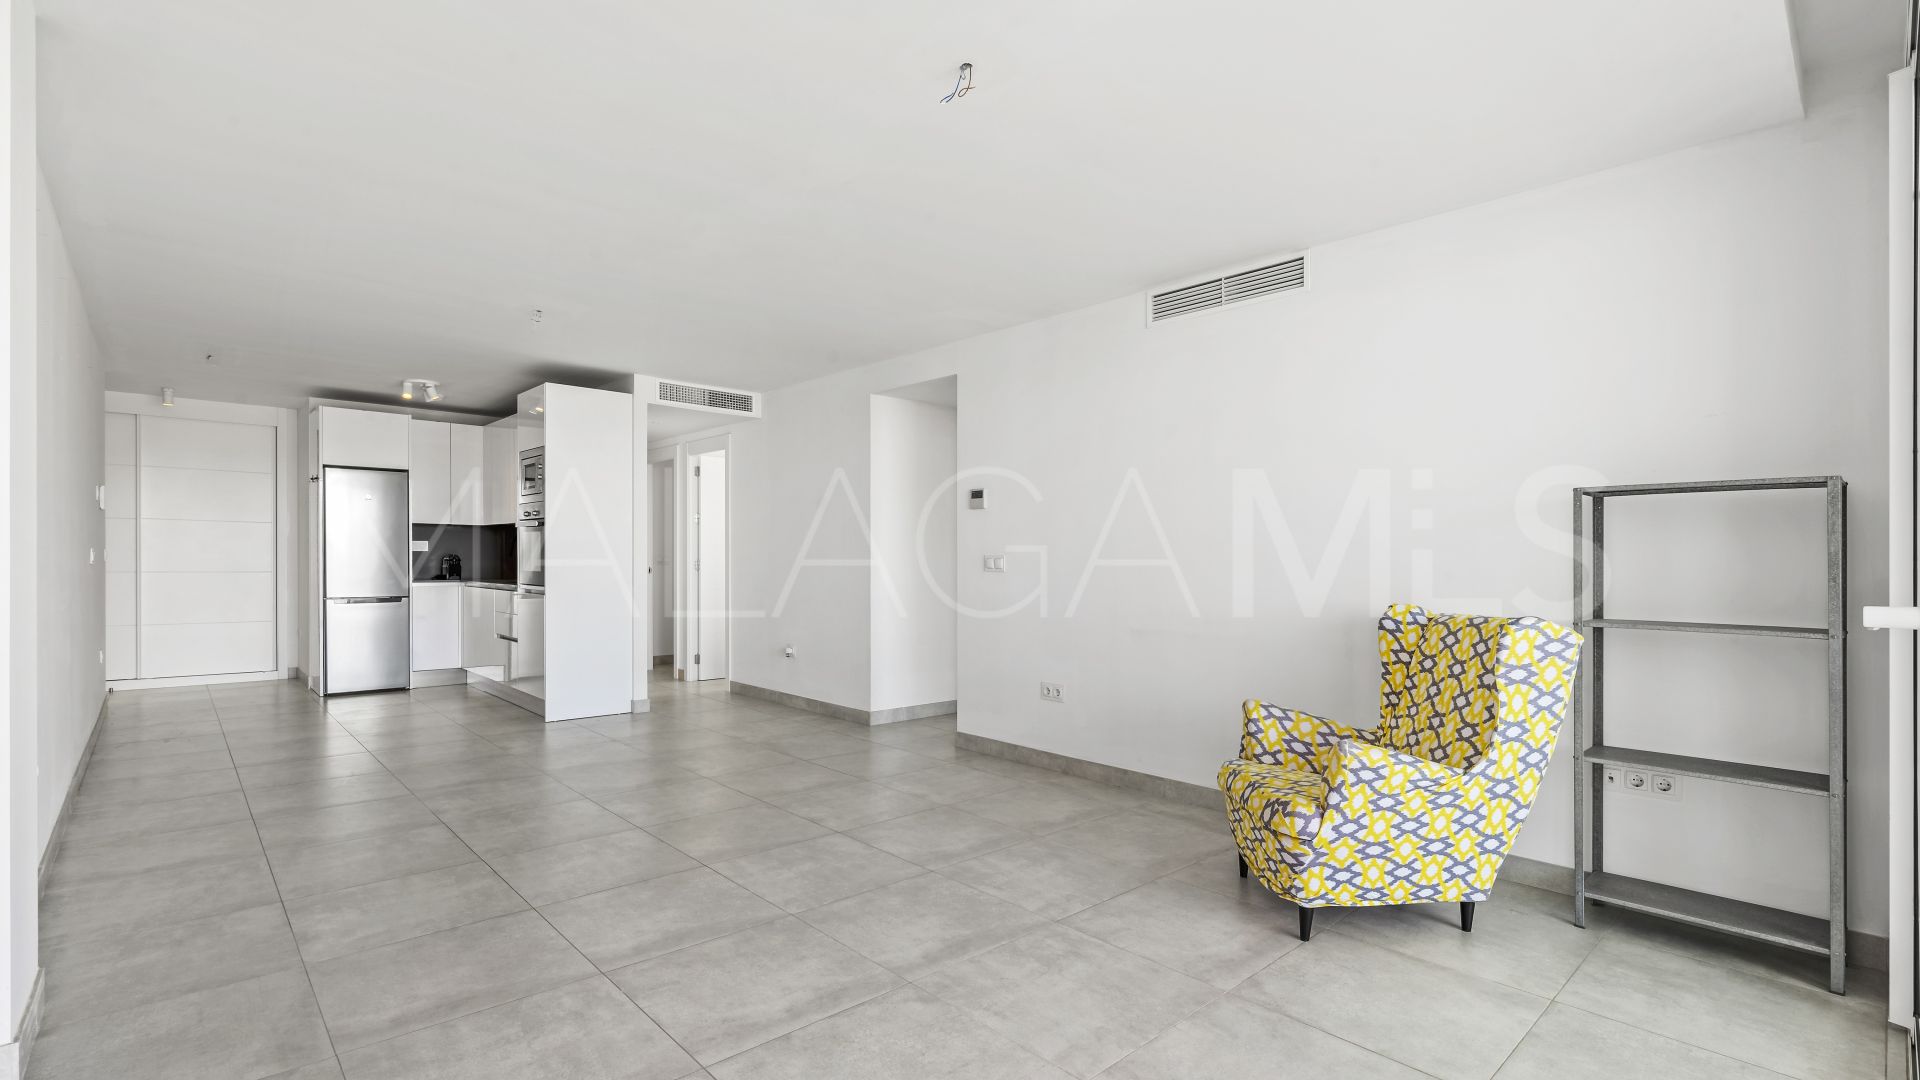 For sale ground floor apartment in Cala de Mijas